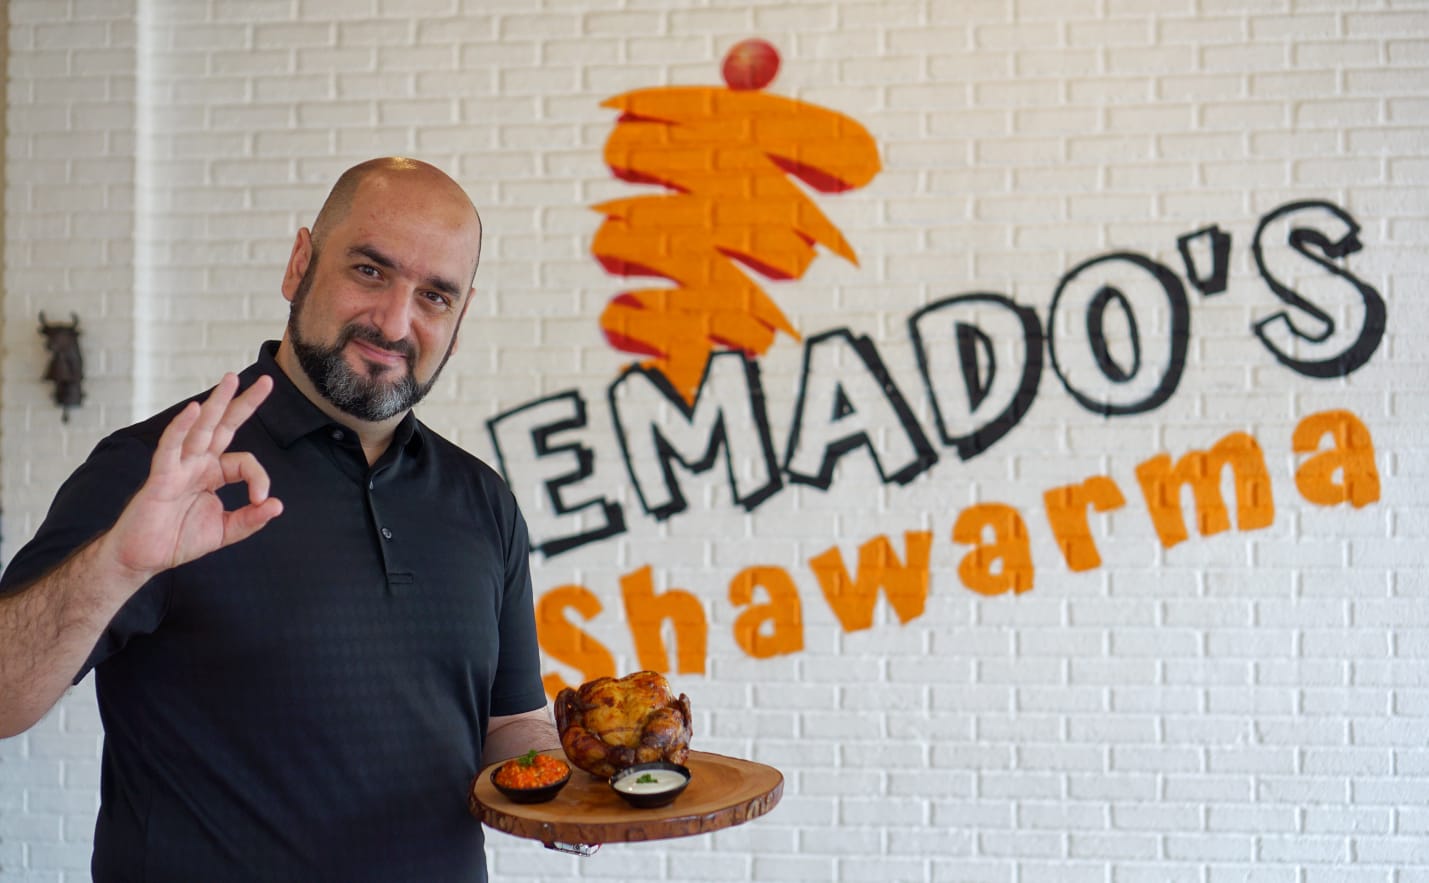 Emado’s Shawarma Populerkan Kuliner Timur Tengah Lewat Platform Digital